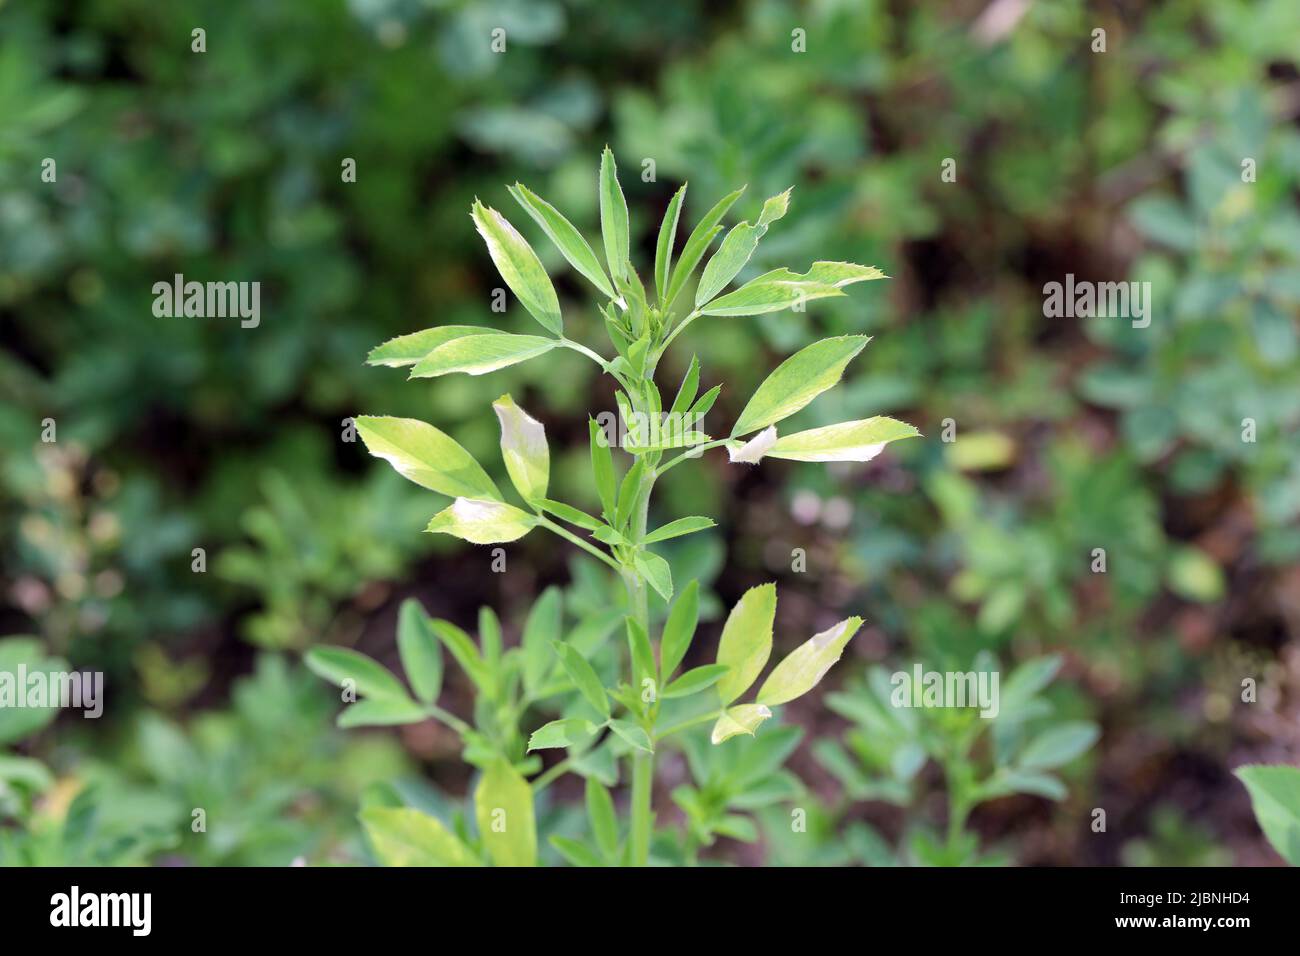 Alfalfa (Medicago sativa) malattia, ingiallimento di foglie su raccolto. Foto Stock